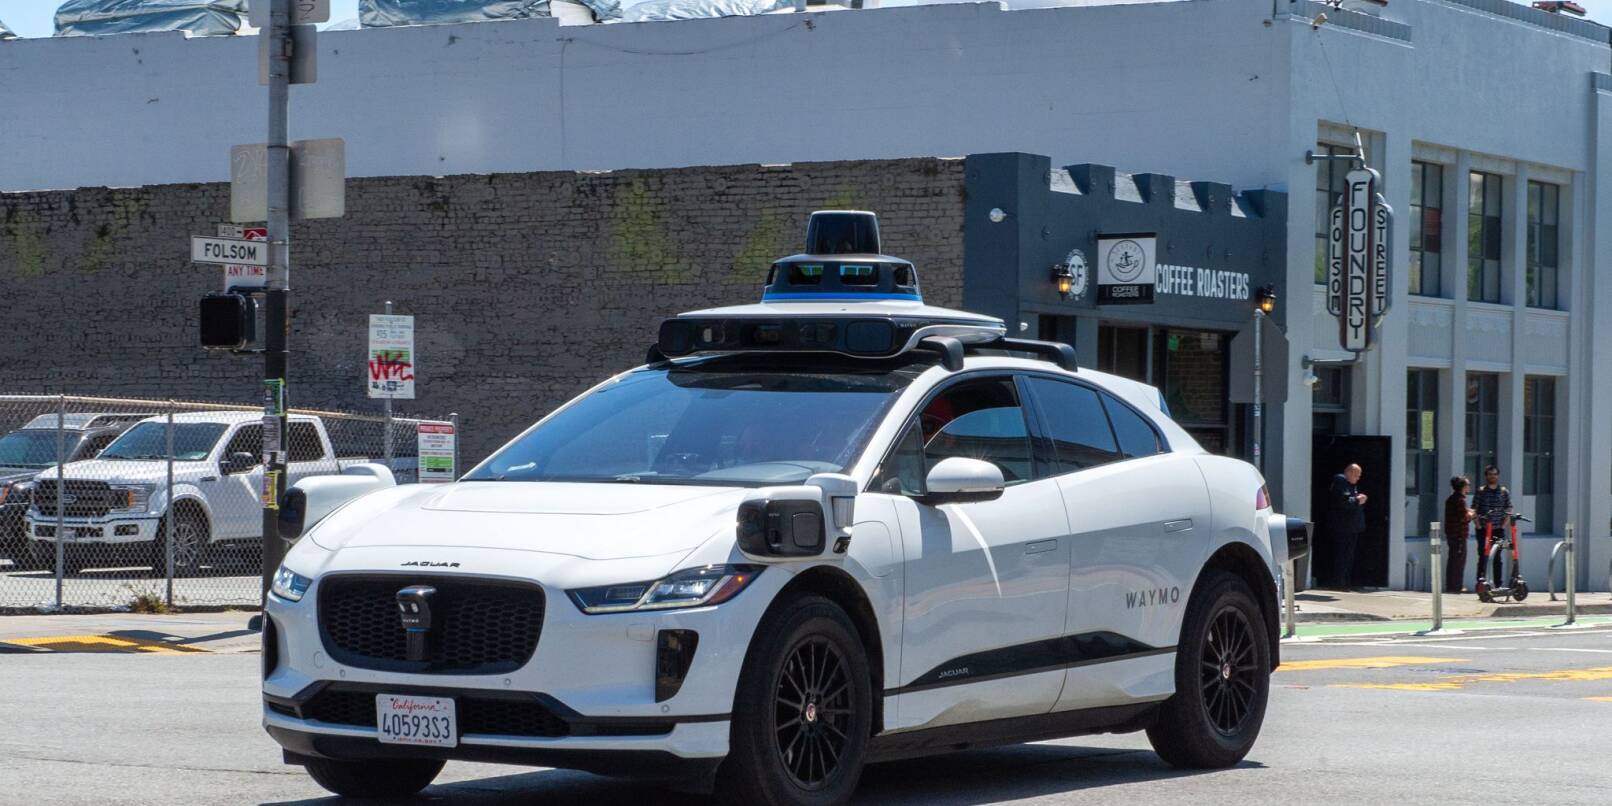 Ein selbstfahrendes Auto der Google-Schwesterfirma Waymo ist im Straßenverkehr von San Francisco unterwegs.